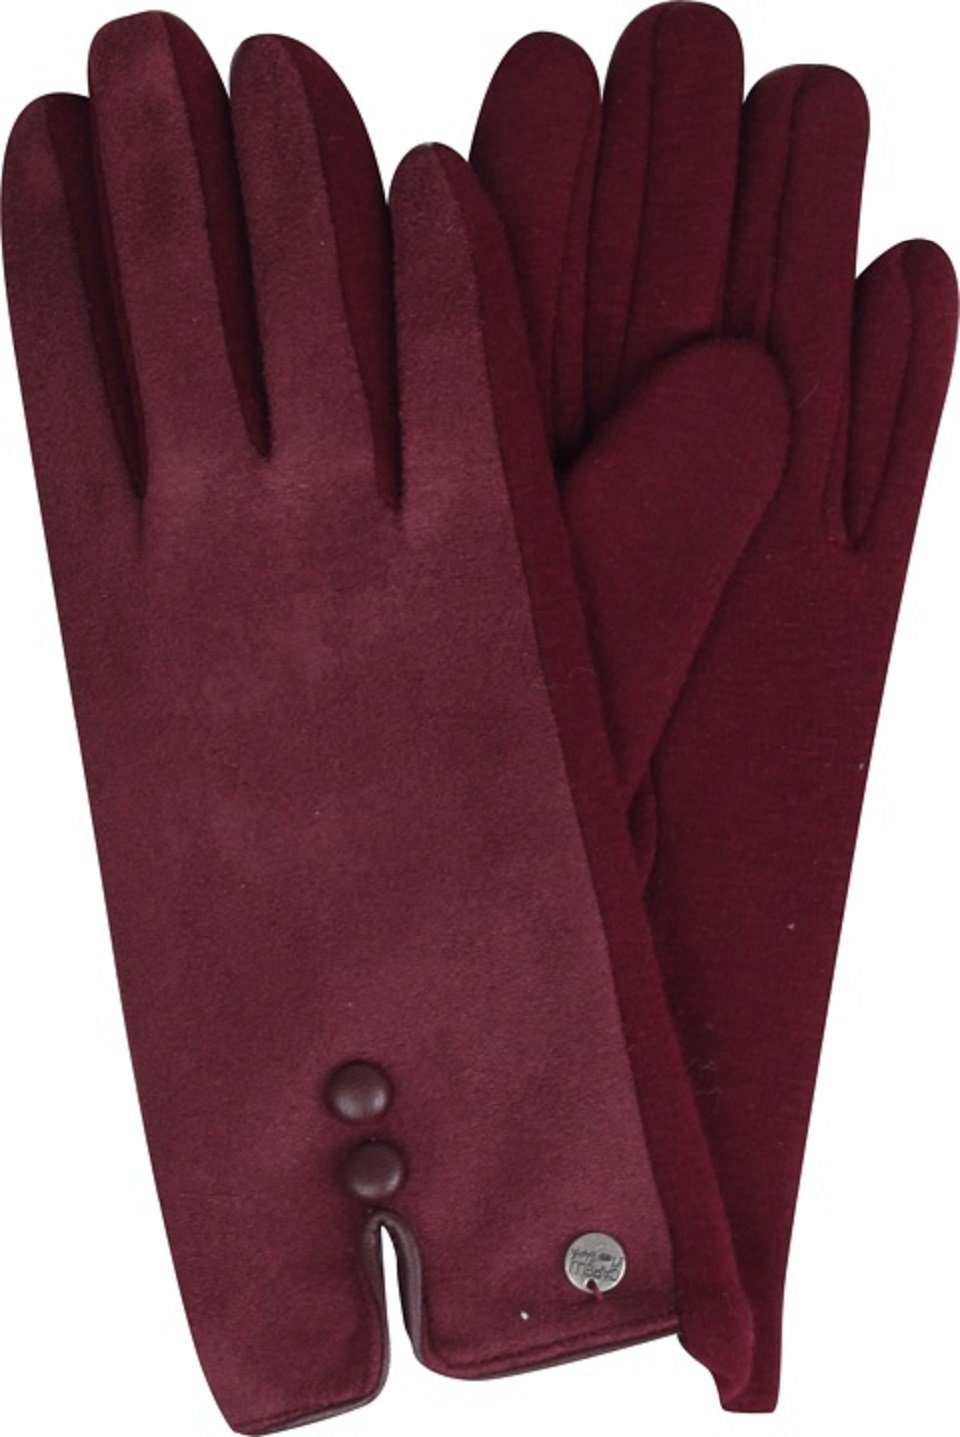 New York Capelli weinrot Baumwollhandschuhe Jersey Handschuhe